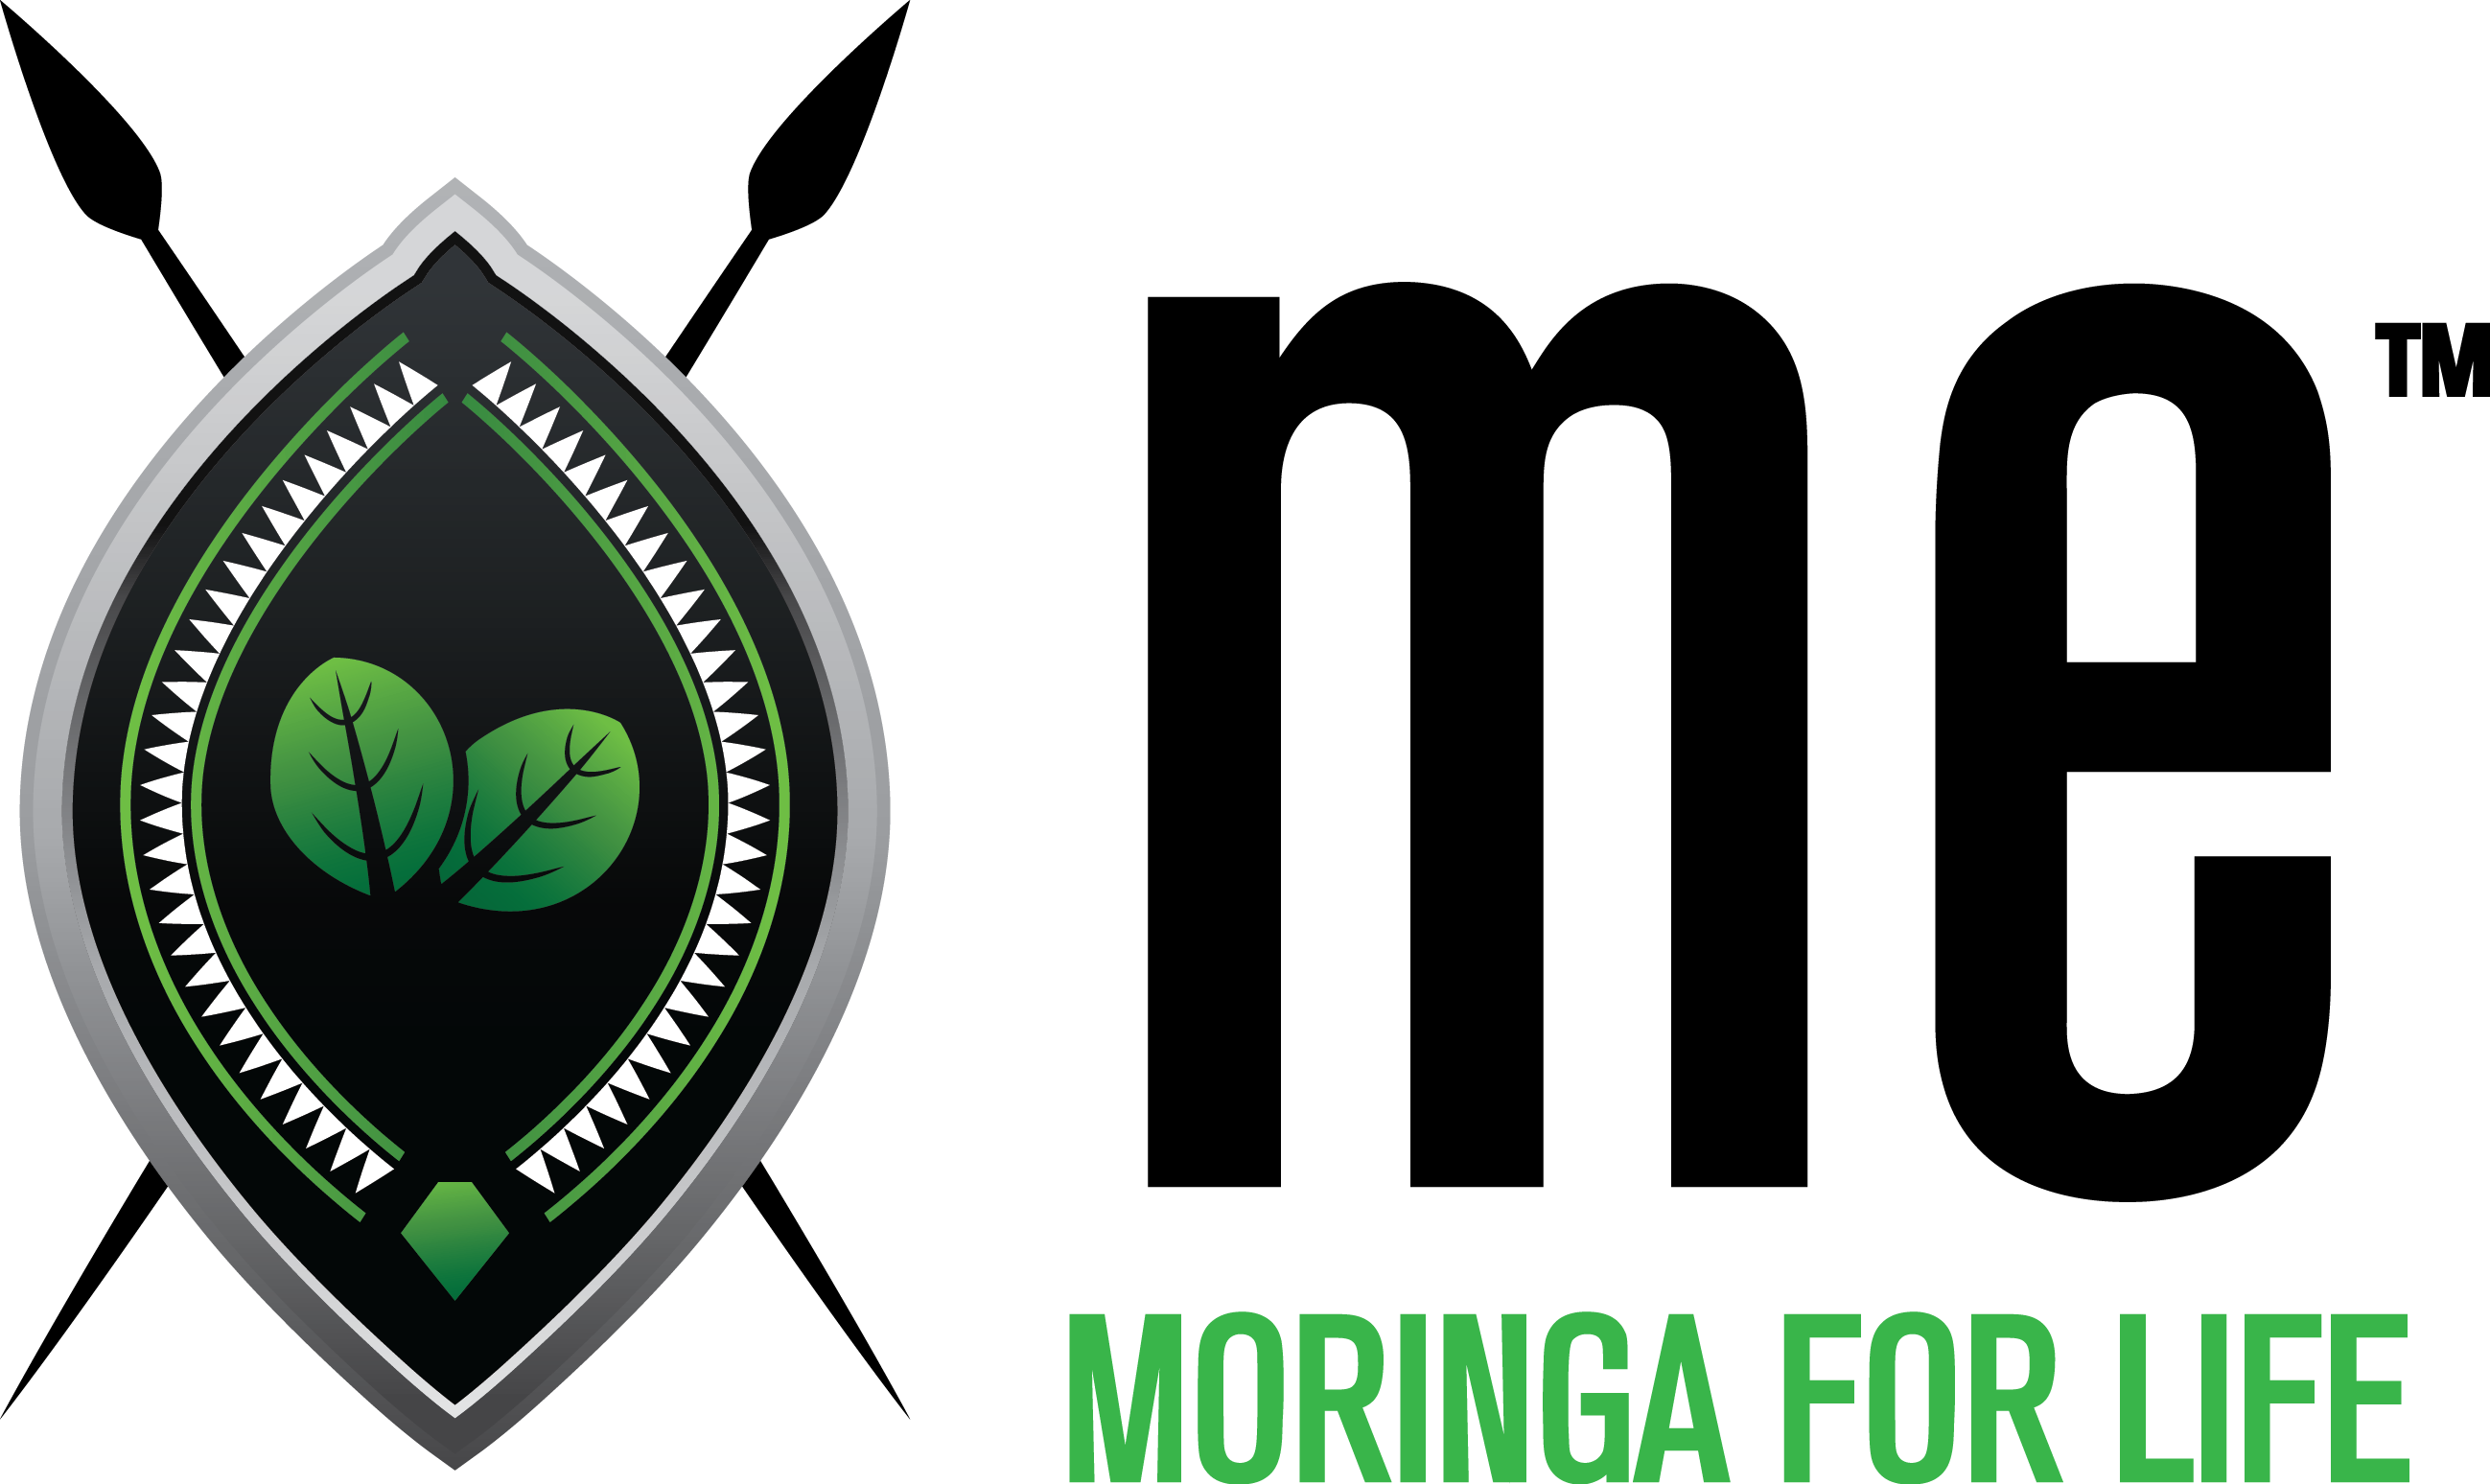 The Moringa Life Style